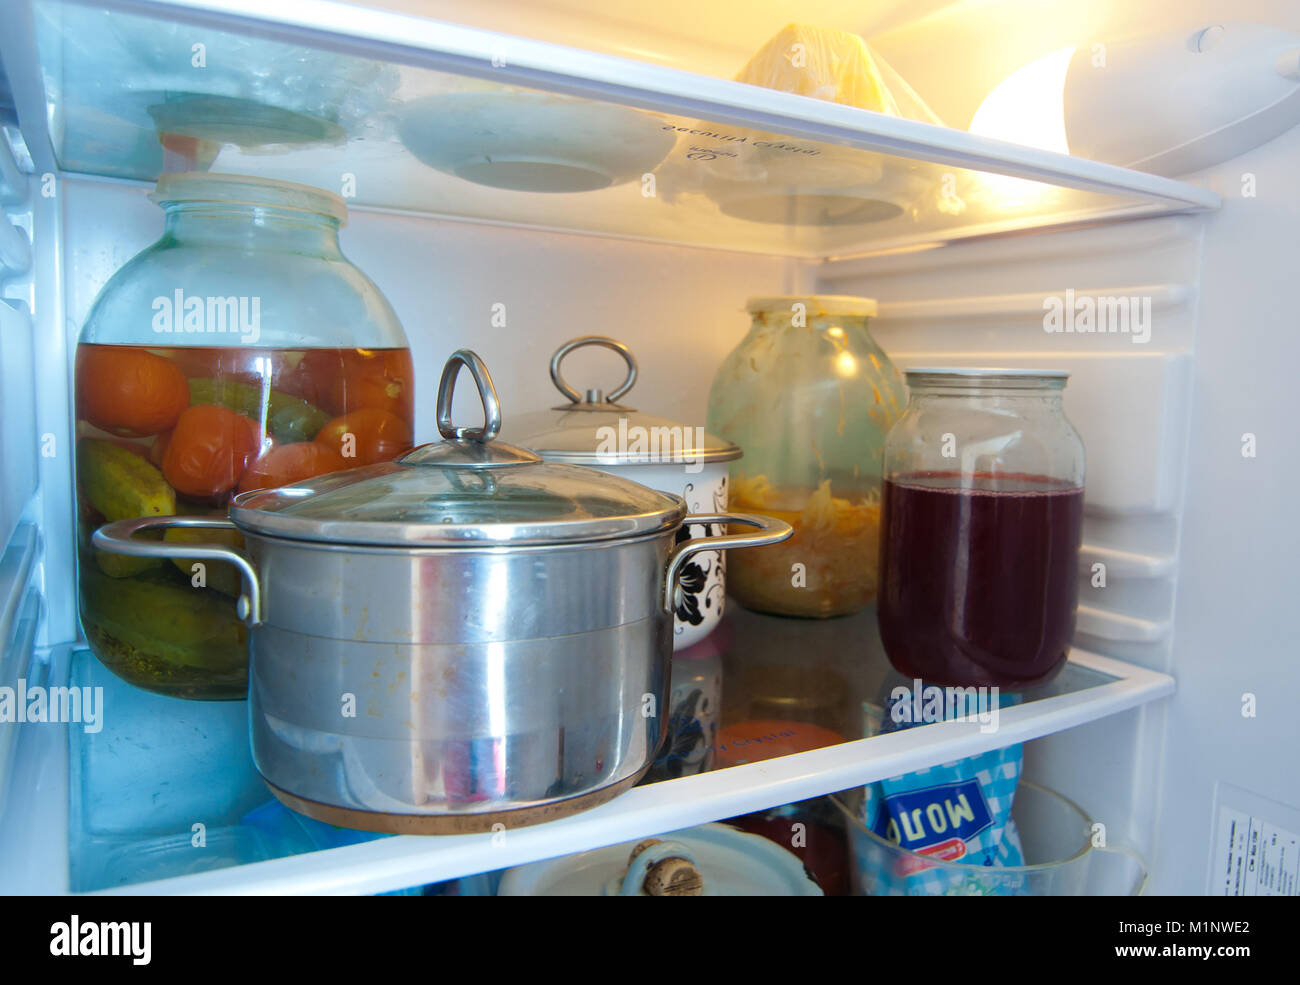 Можно горячий суп ставить в холодильник. Кастрюля в холодильнике. Холодильники с едой и кастрюлями. Кастрюля с едой. Хранение в холодильнике с кастрюли.